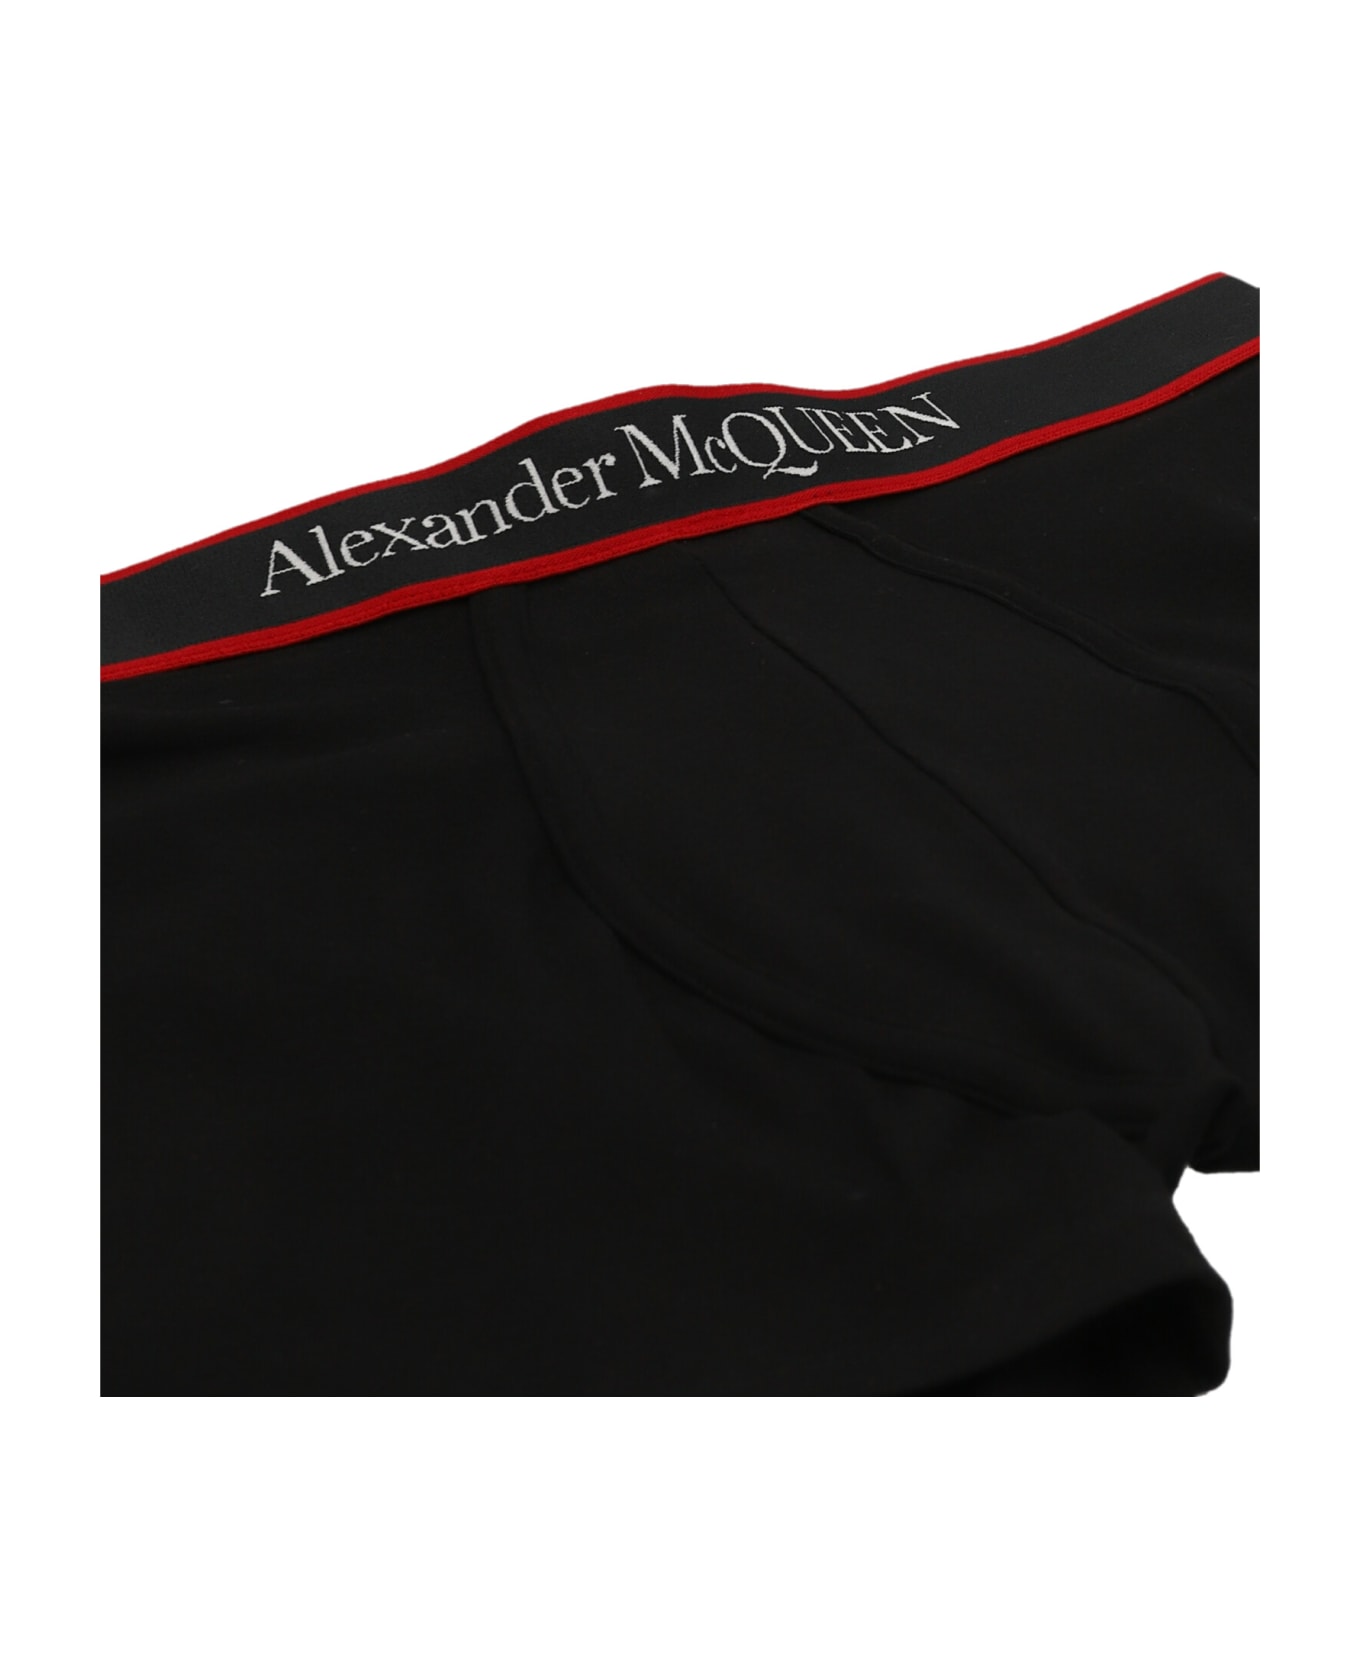 Alexander McQueen Logo Boxer Shorts - Black  